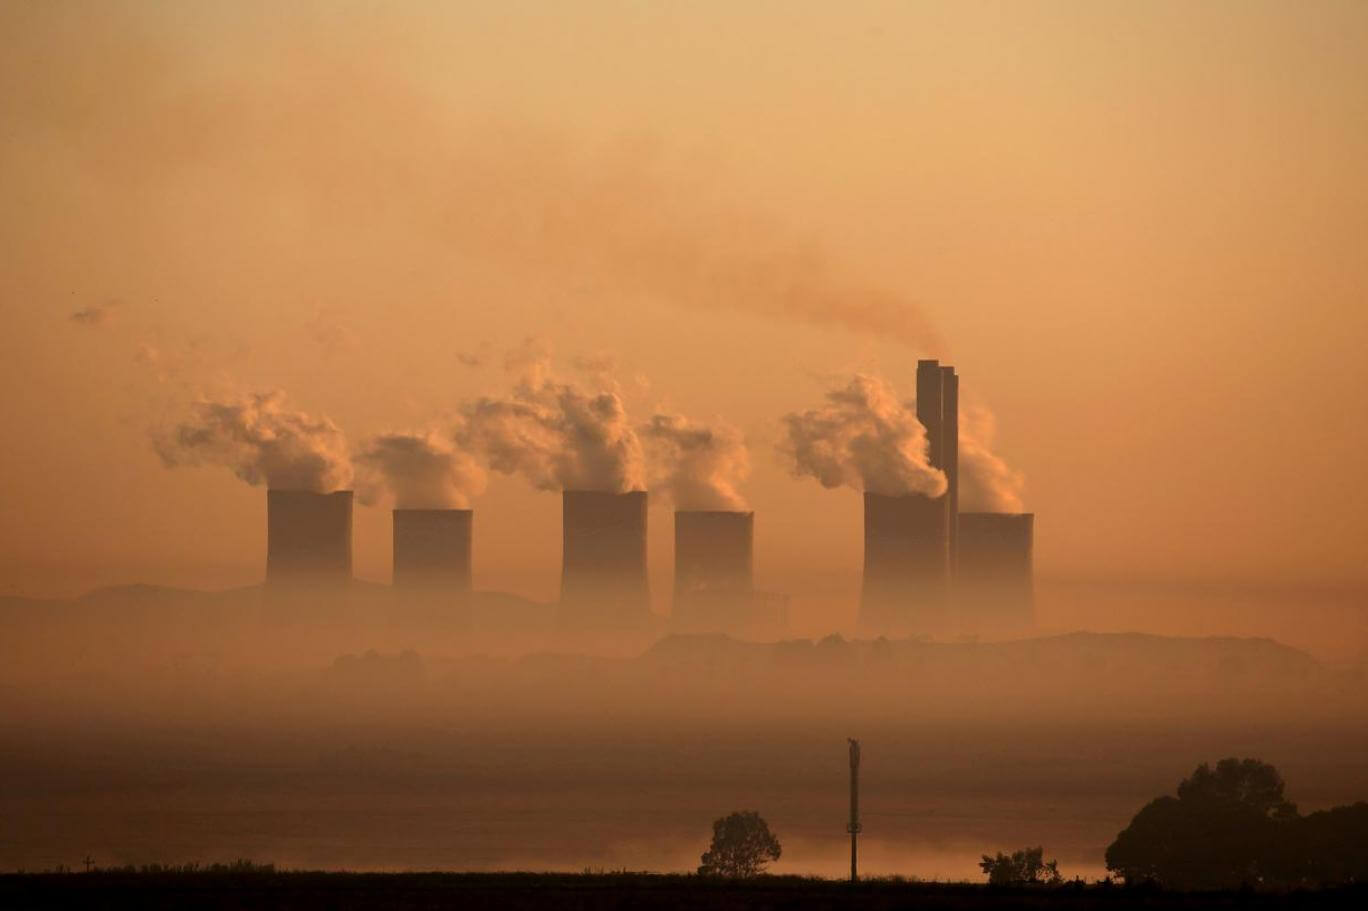 Bankalar Paris Anlaşması’ndan Bu Yana Fosil Yakıtlara 7 Trilyon Dolar Aktardı